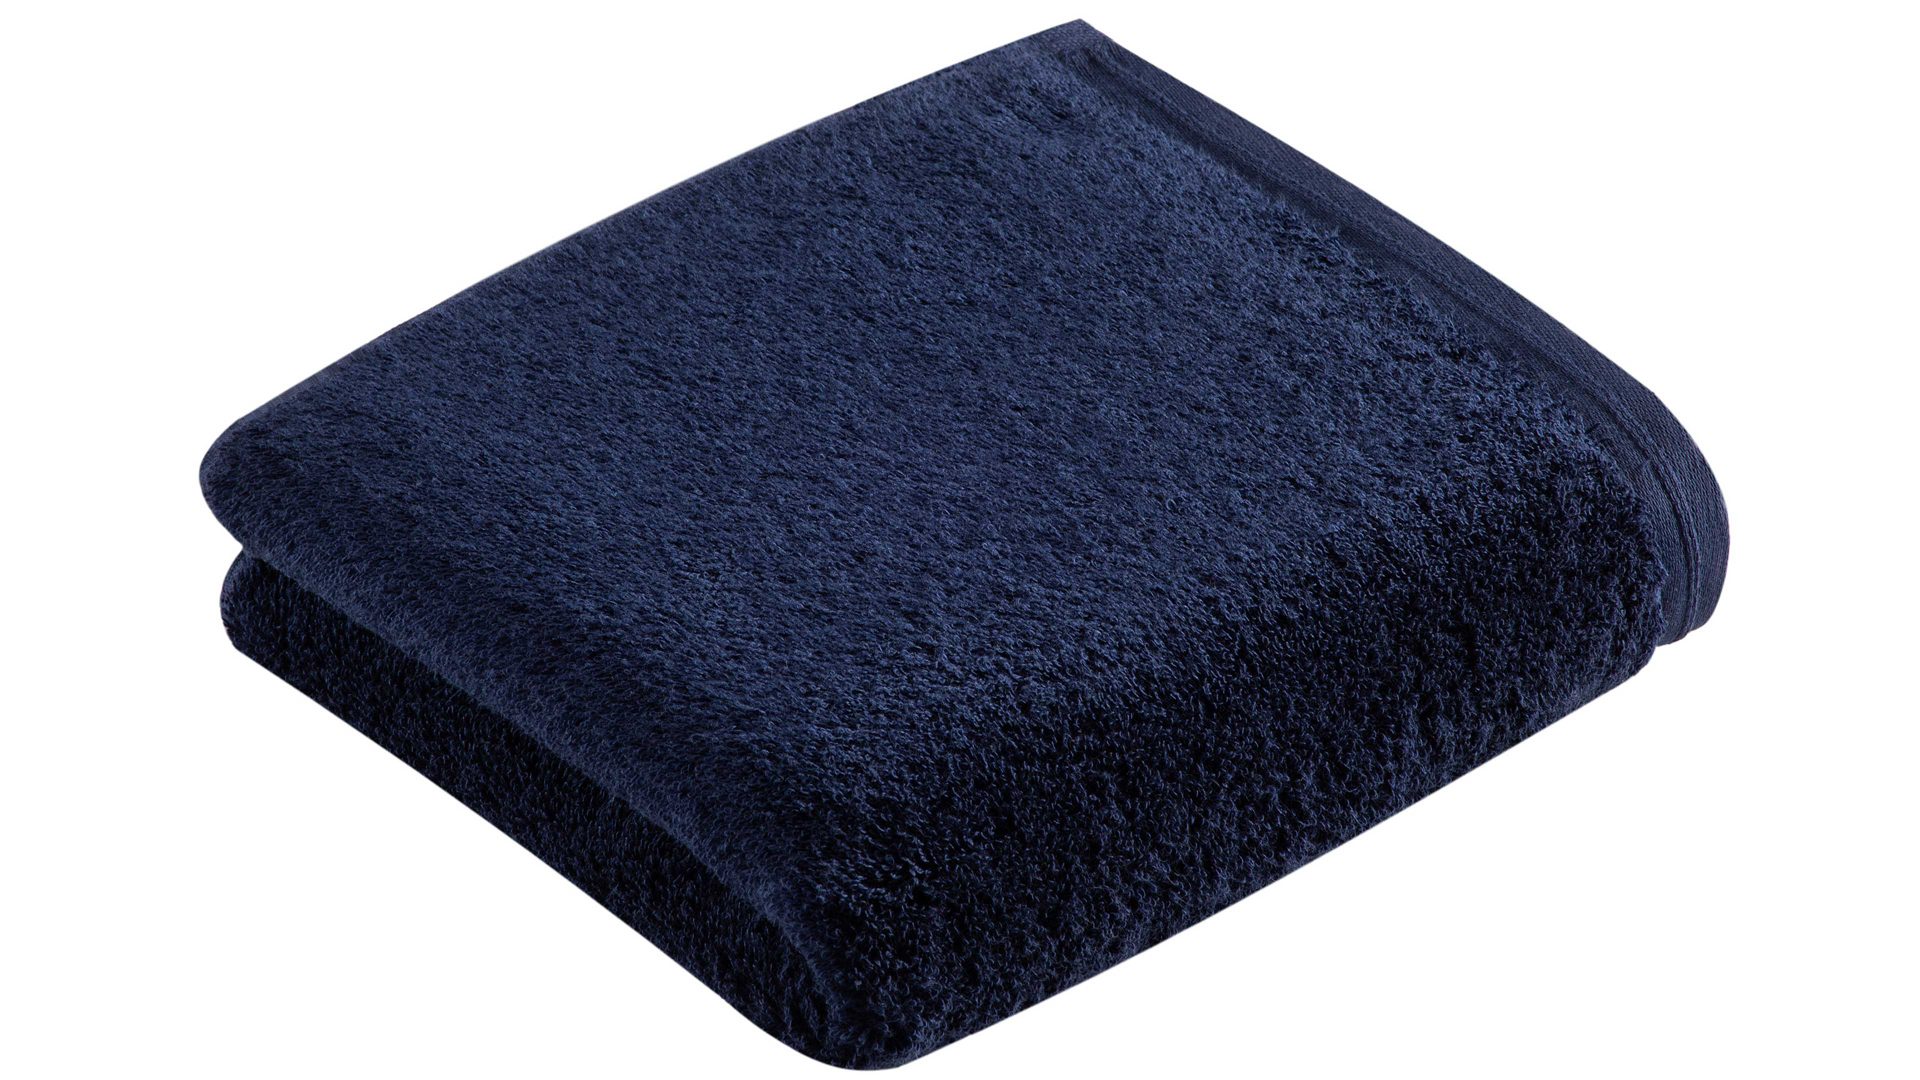 Handtuch Vossen aus Naturfaser in Dunkelblau VOSSEN® Handtuchserie Vegan Life – Handtuch marineblauer Baumwoll-Frottee – ca. 50 x 100 cm